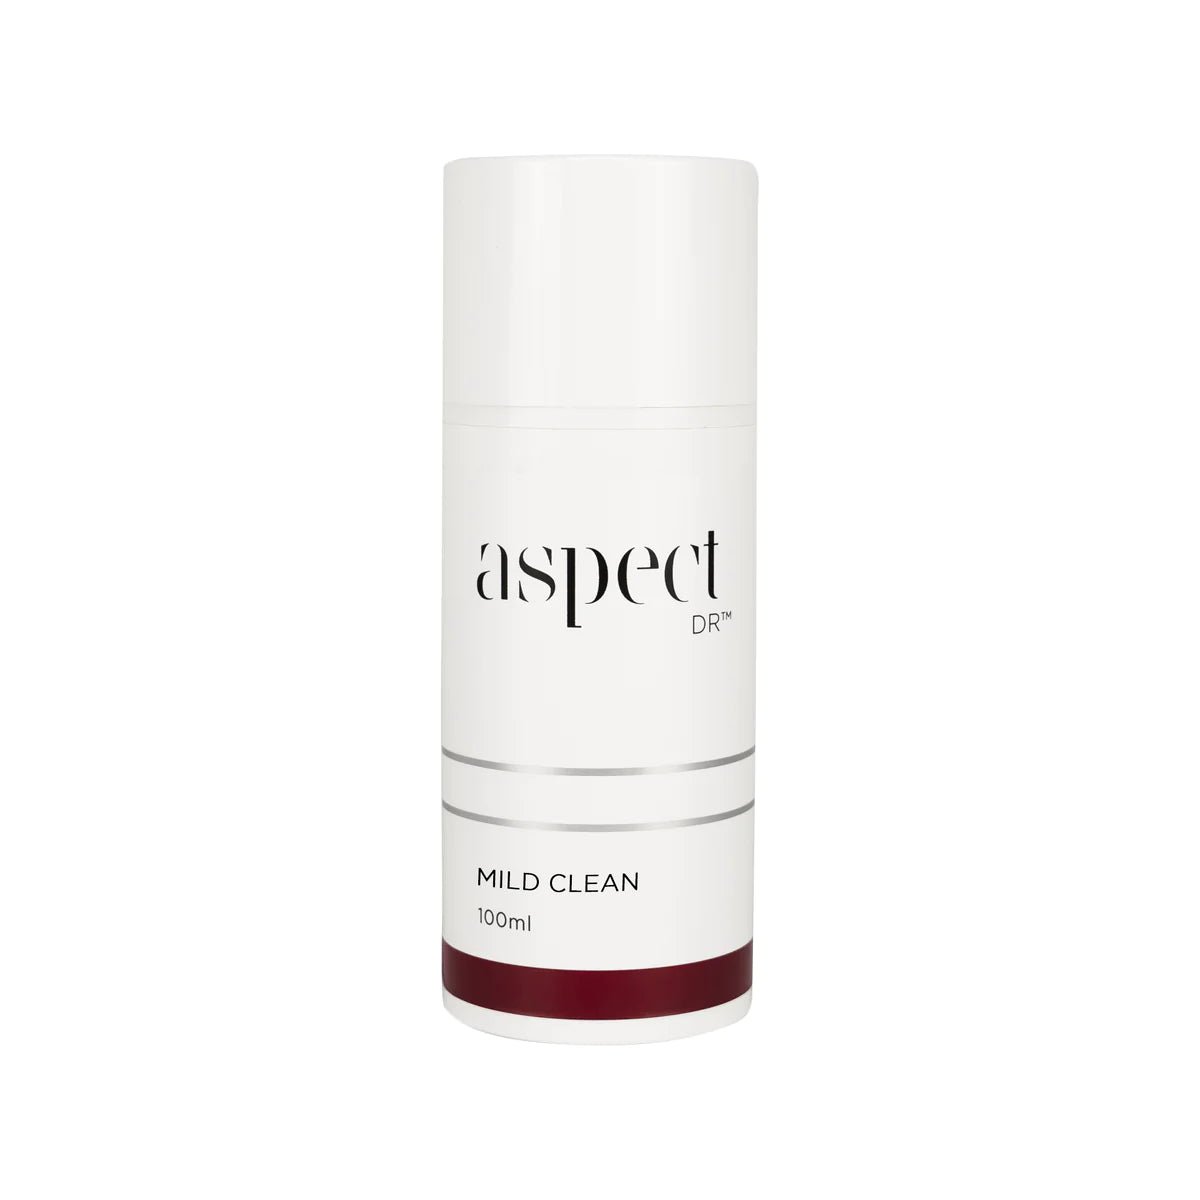 ASPECT DR Mild Clean Facial Cleanser 100ML - Exquisite Laser Clinic